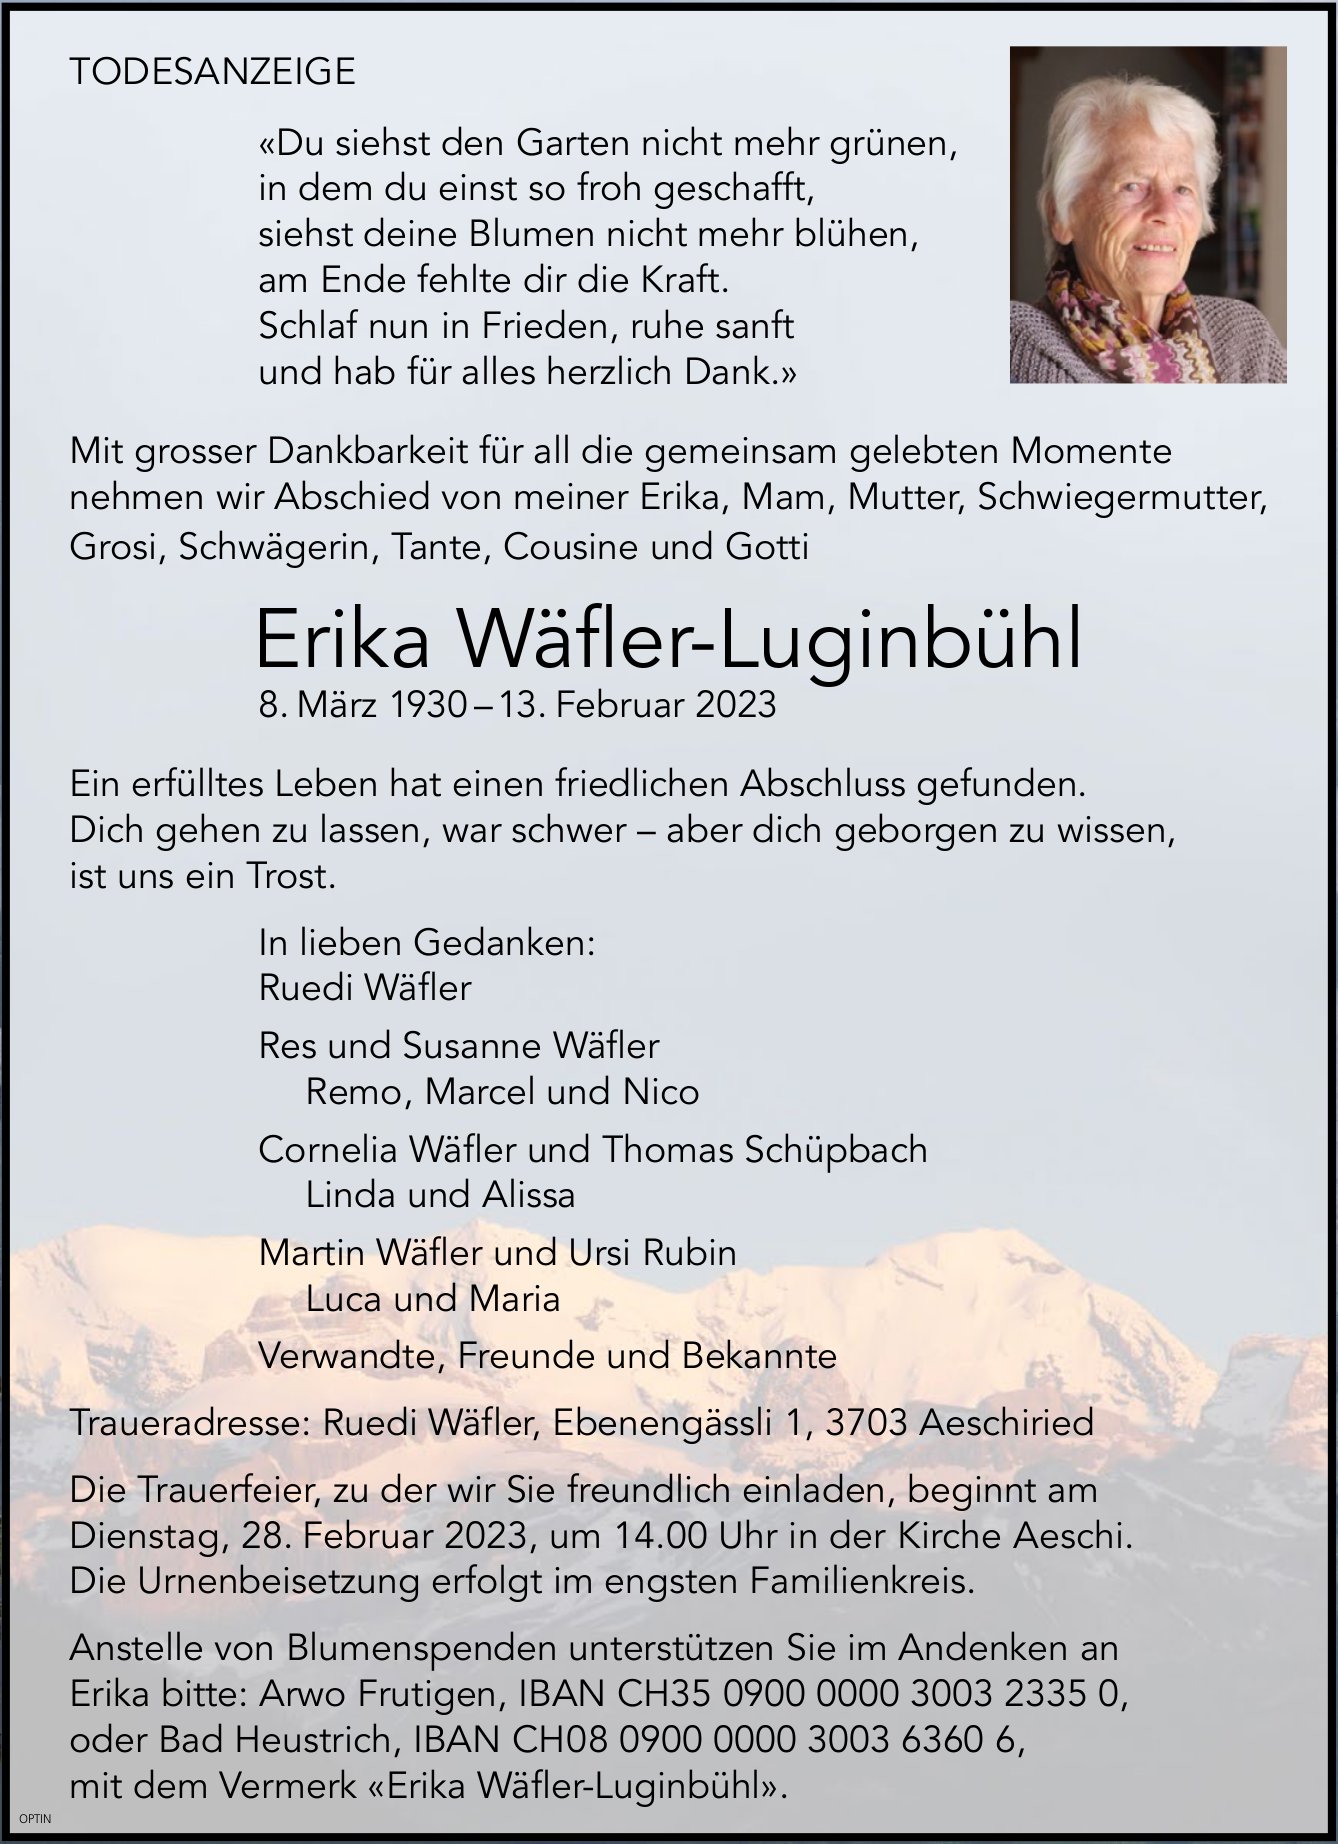 Erika Wäfler-Luginbühl, Februar 2023 / TA